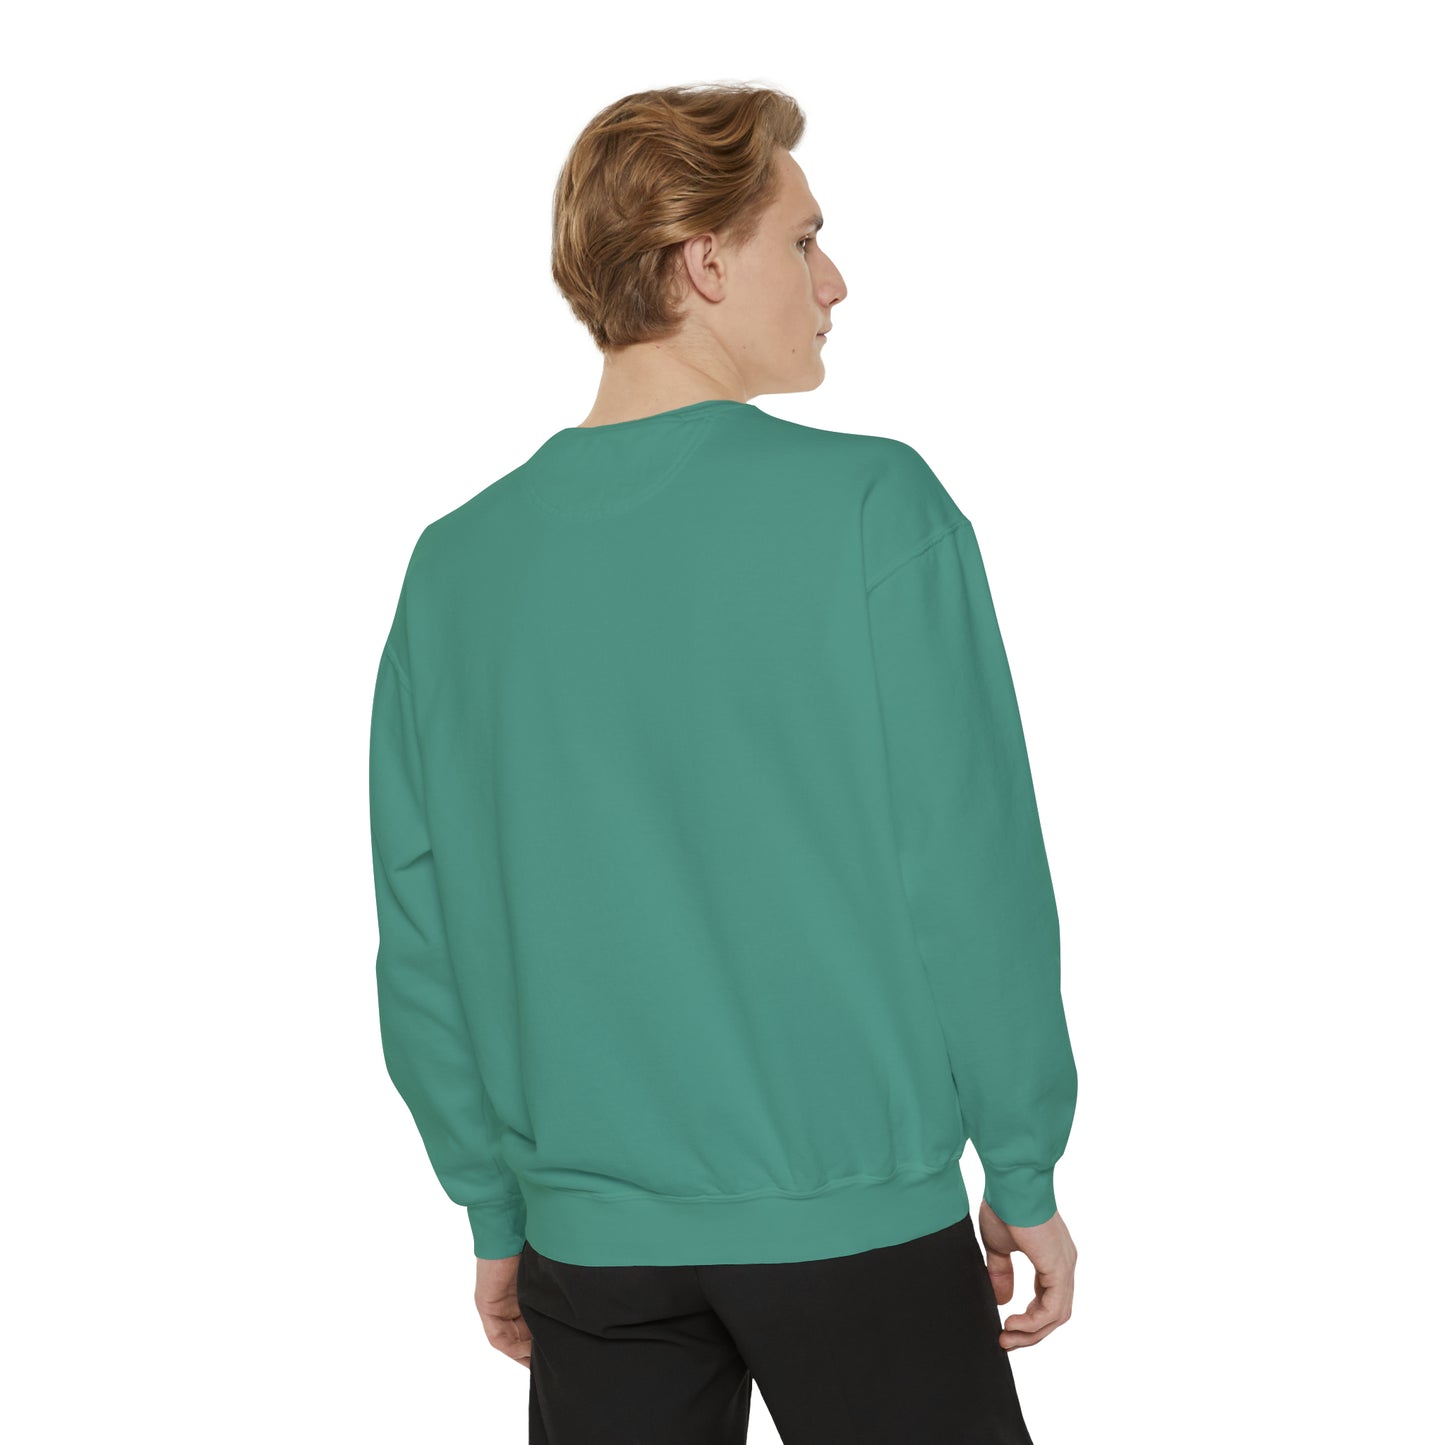 Big Nick Energy Comfort Colors Unisex Garment-Dyed Sweatshirt